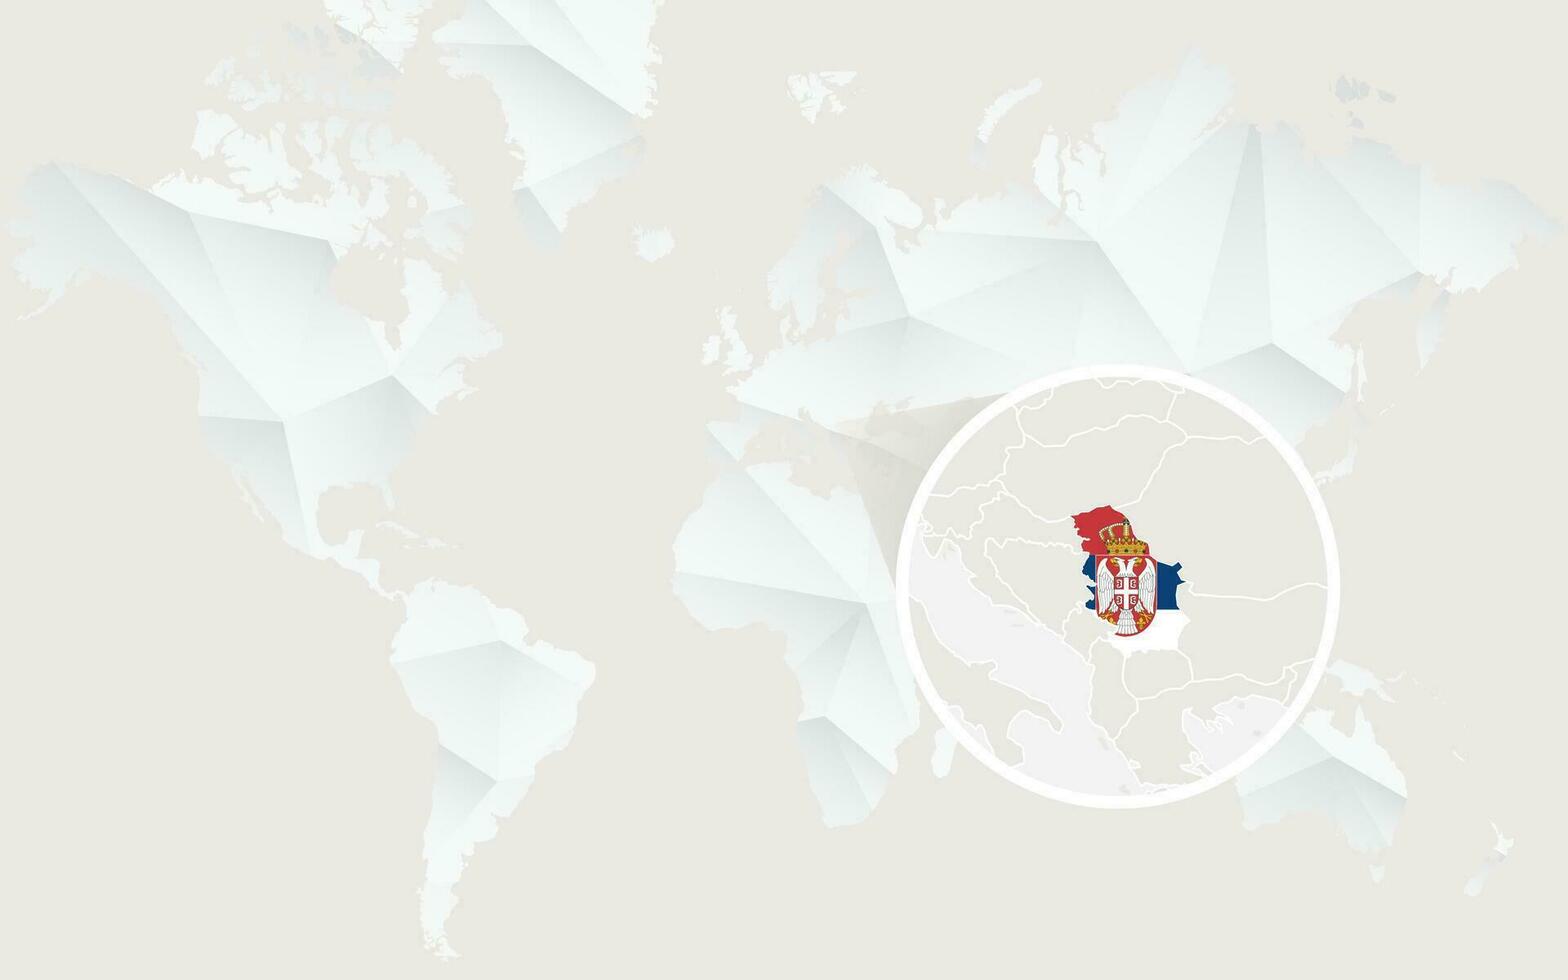 serbia mapa con bandera en contorno en blanco poligonal mundo mapa. vector